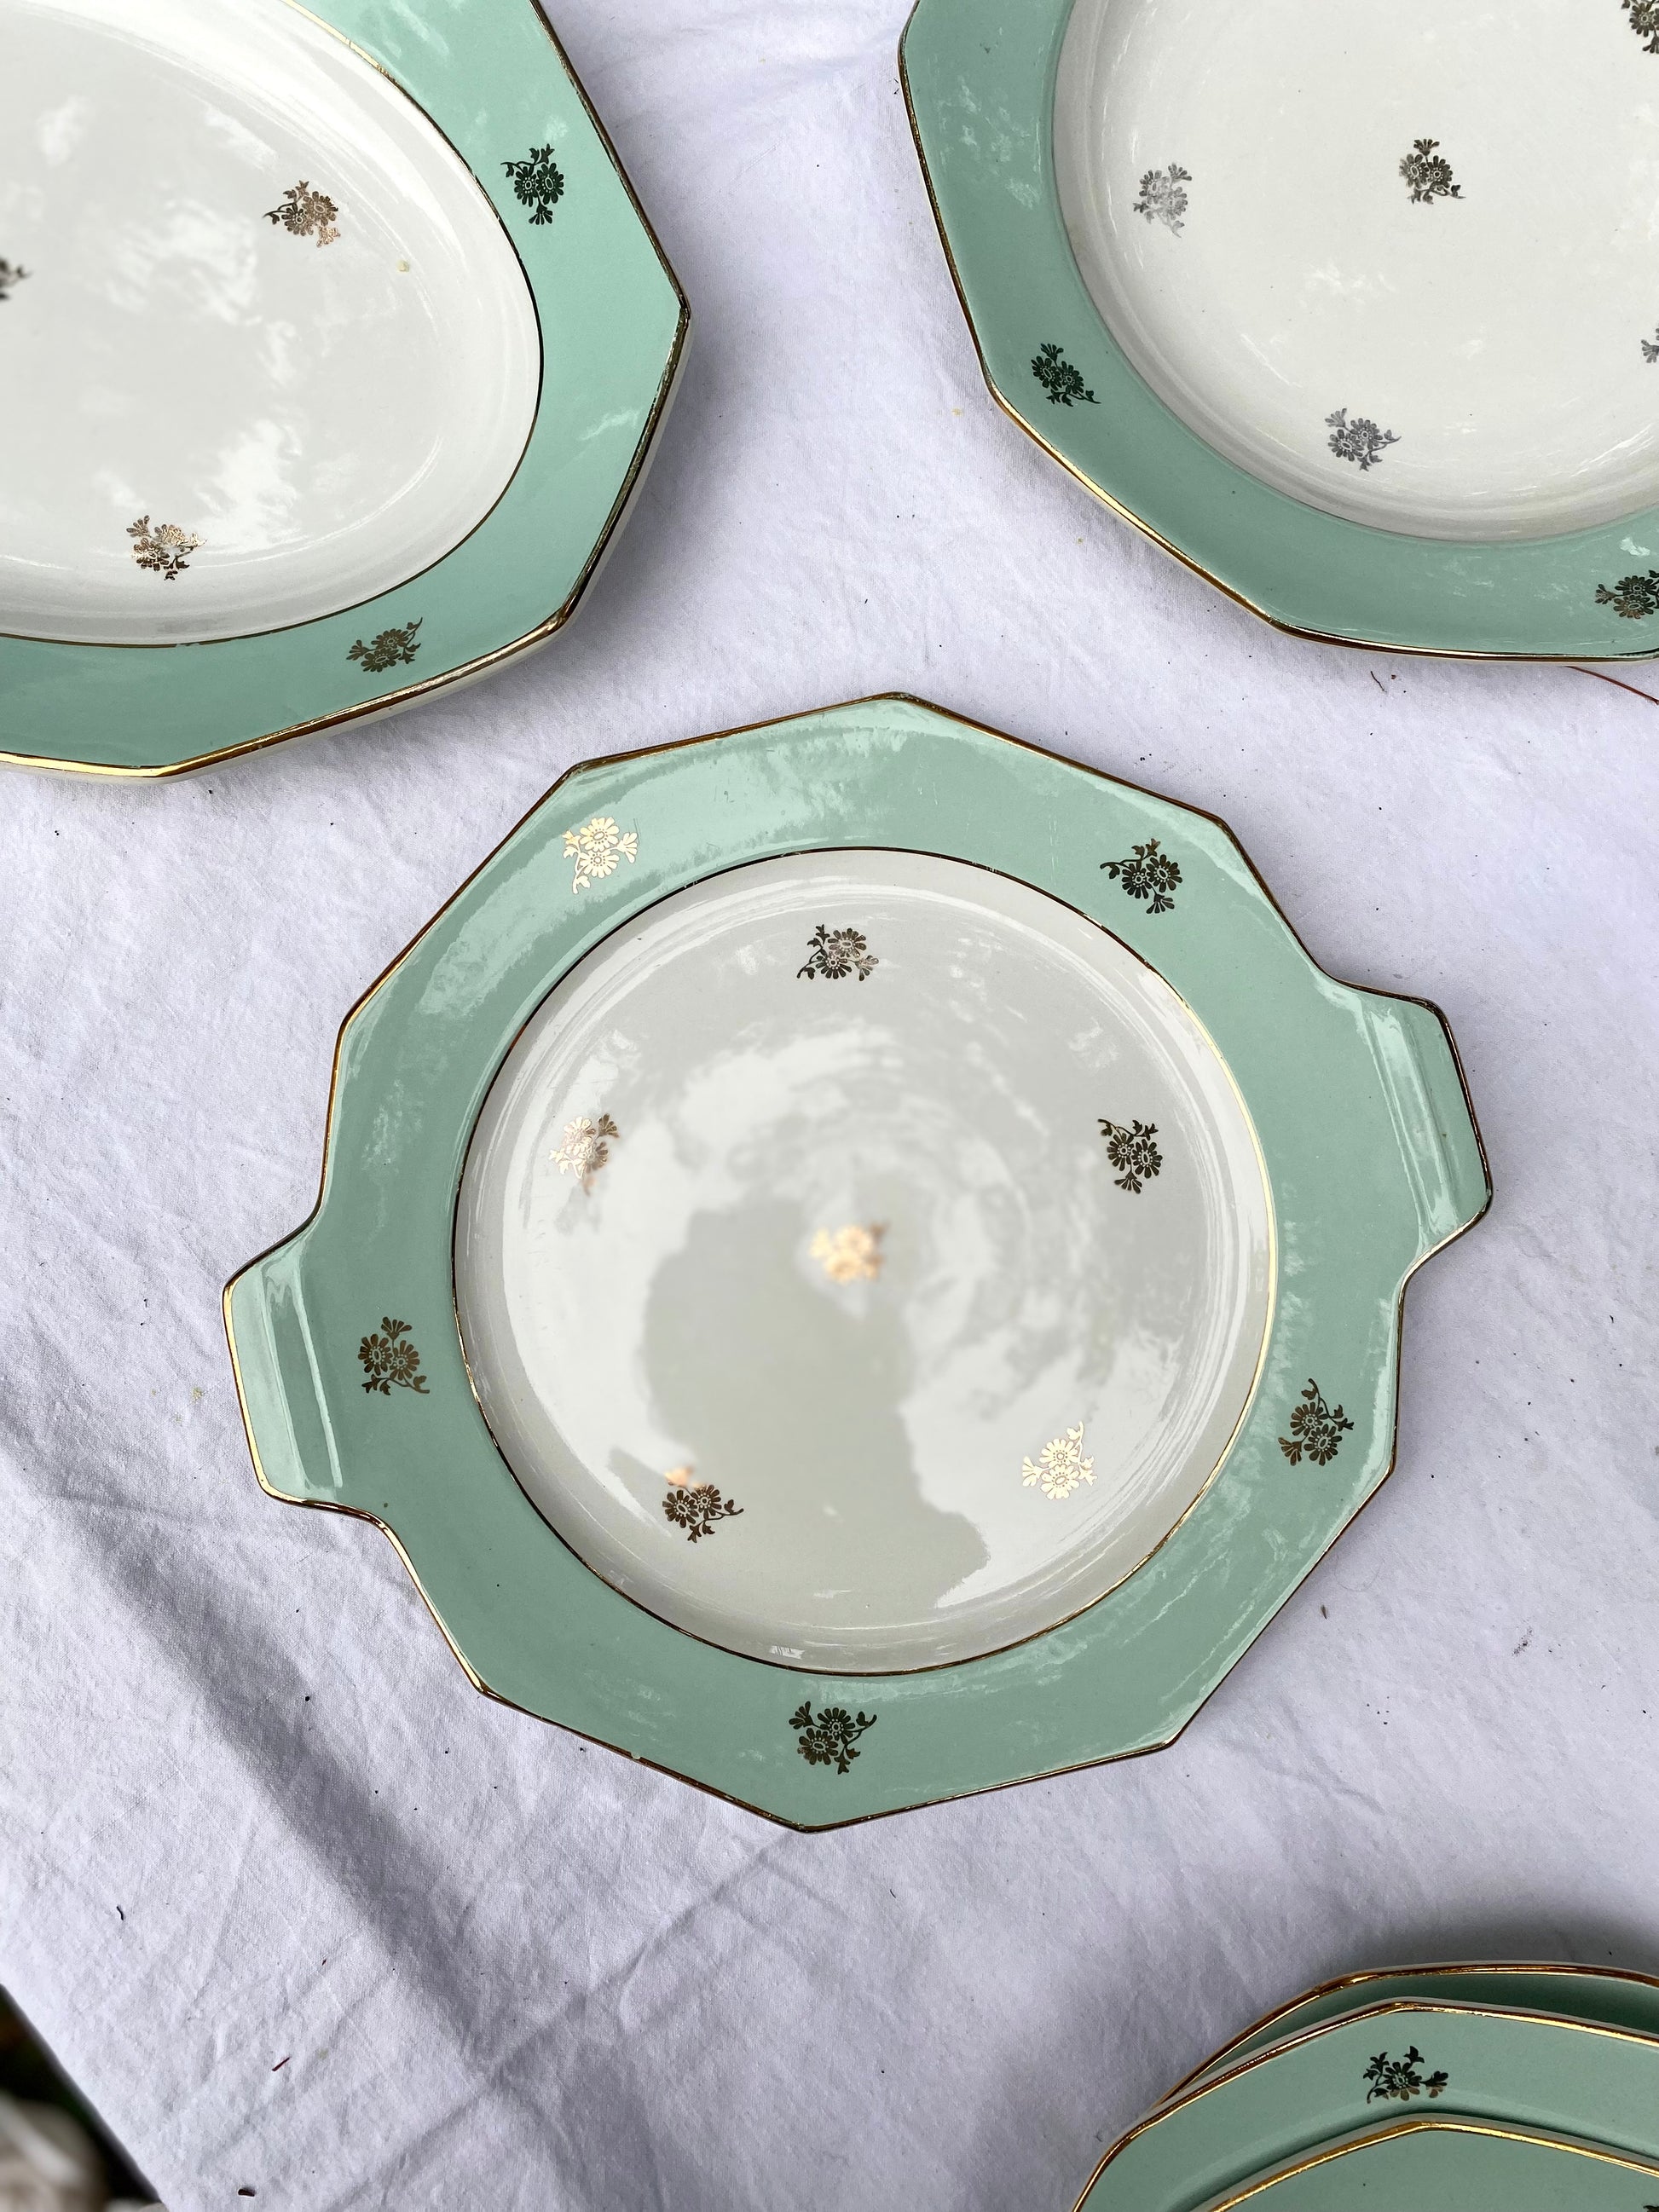 Service de vaisselle en porcelaine Selinex vert avec bordure dorée